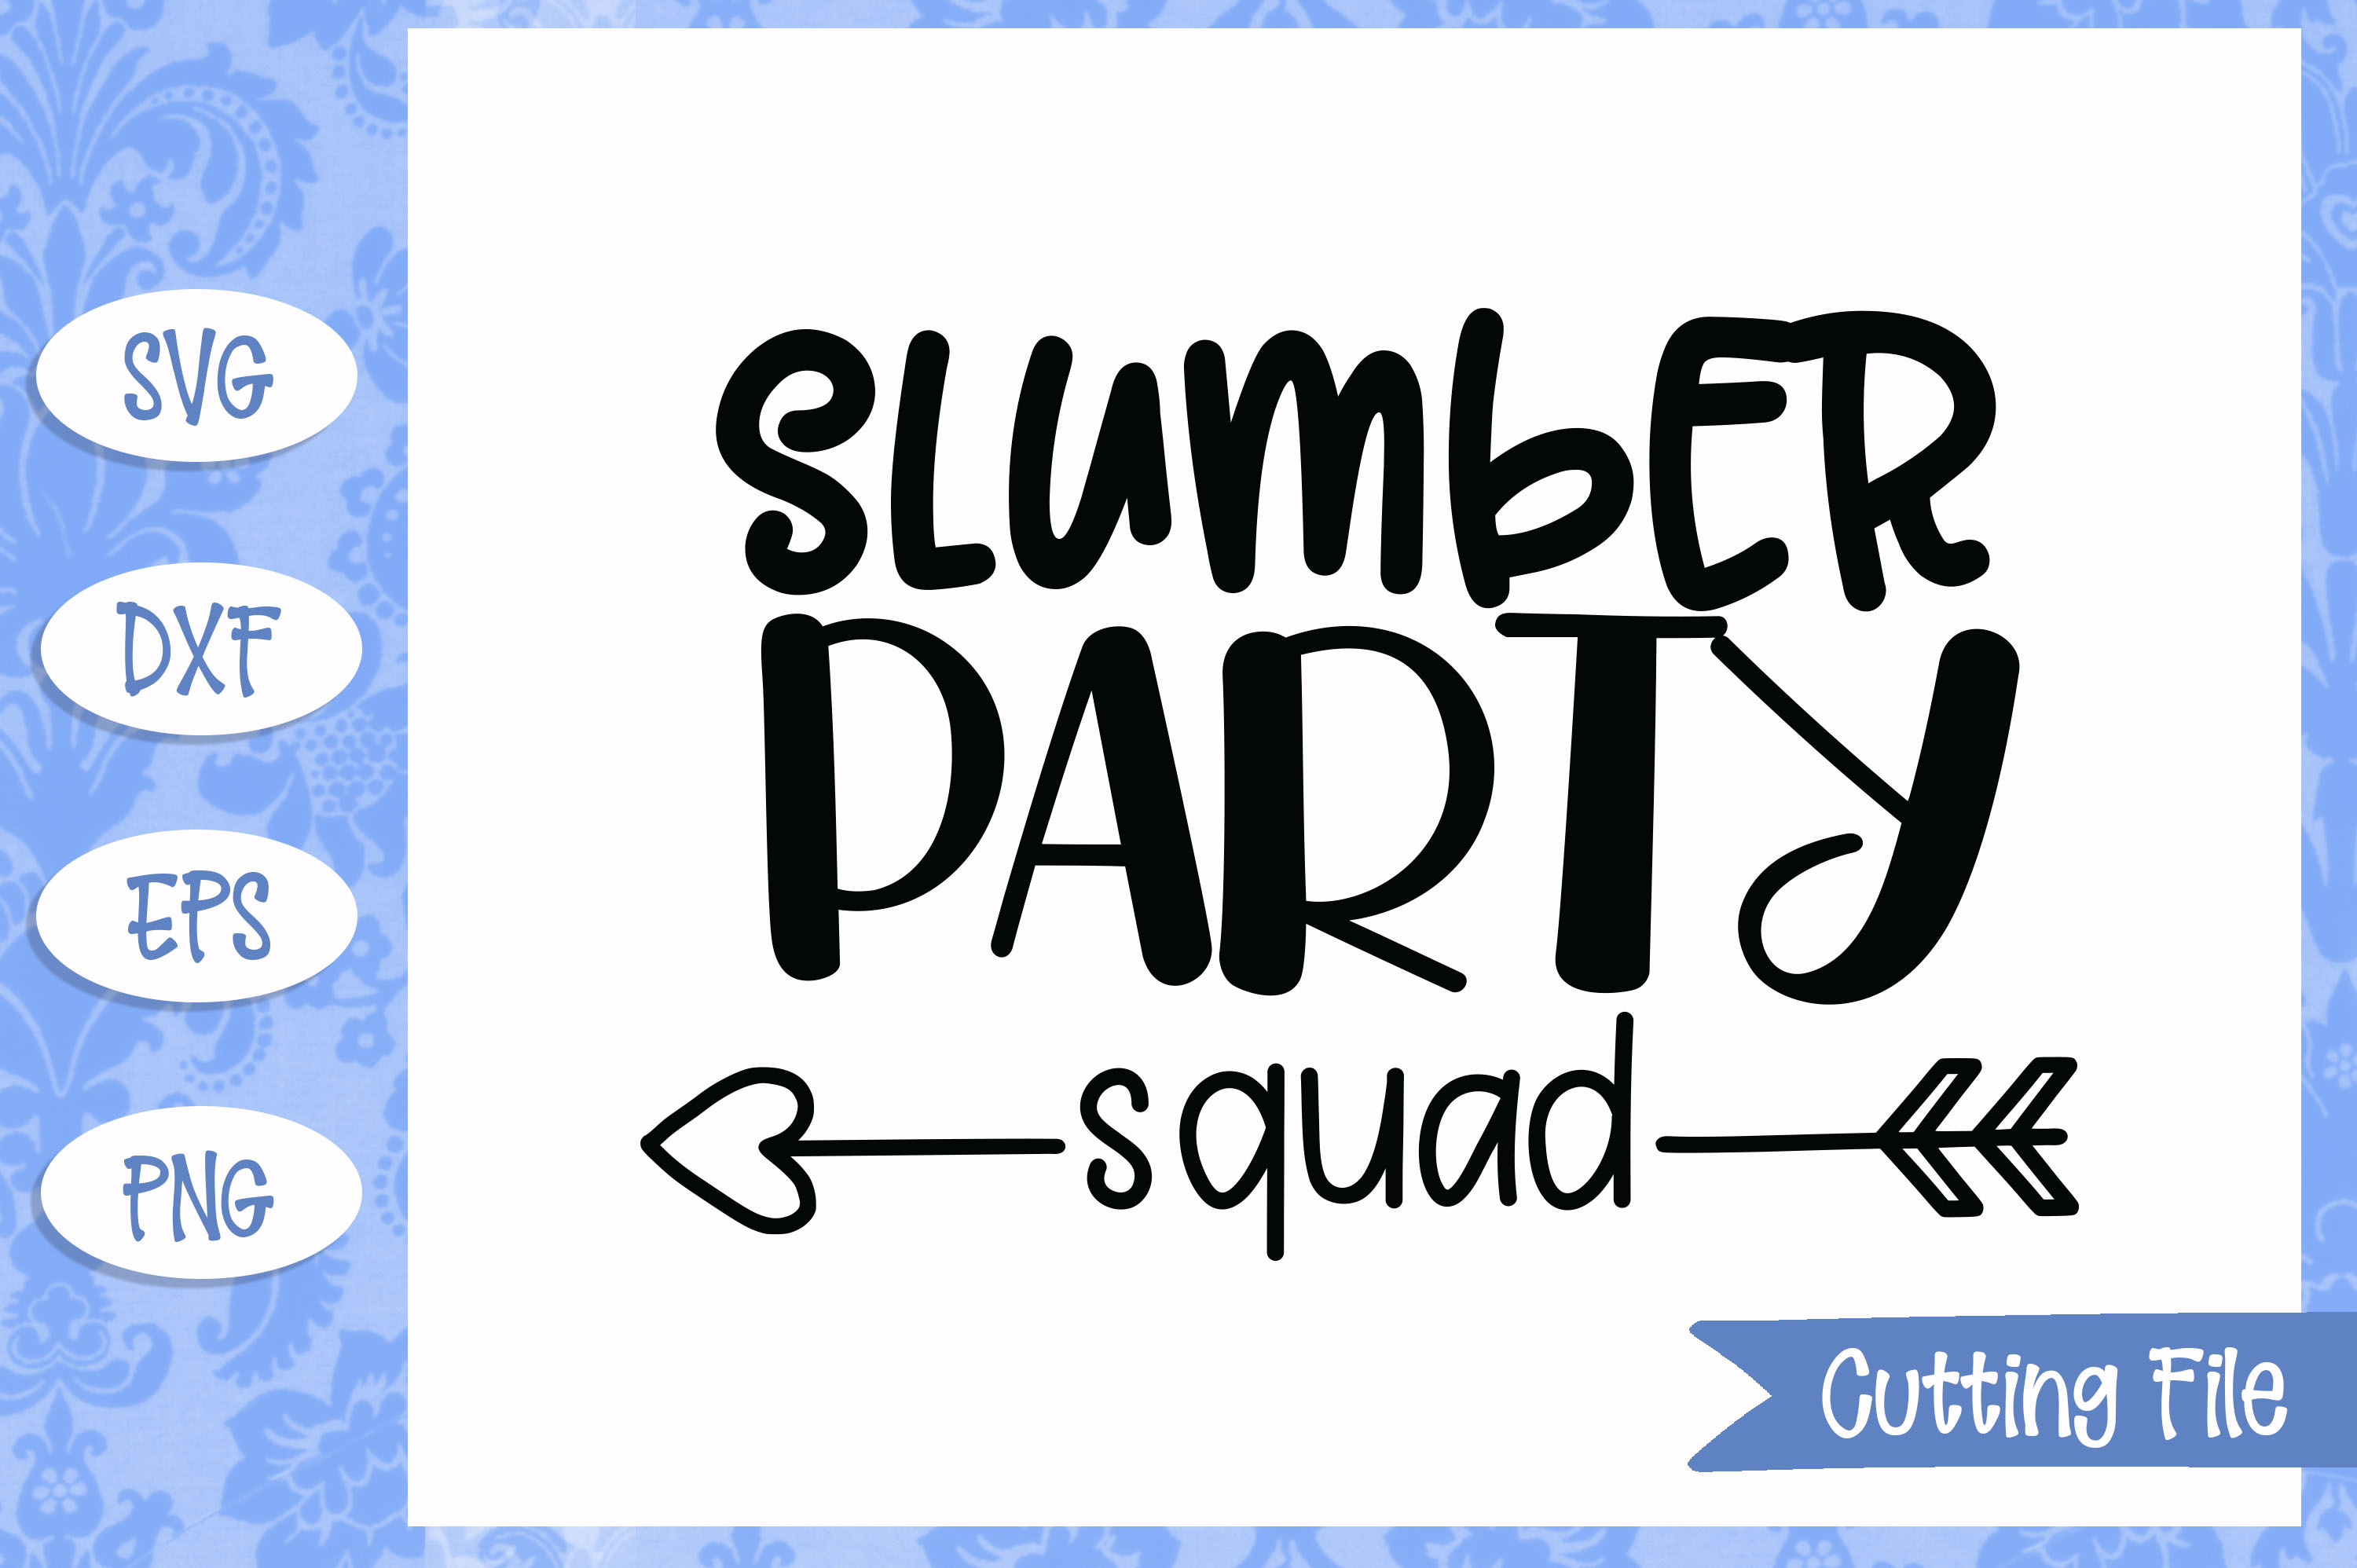 Download Slumber party squad SVG File